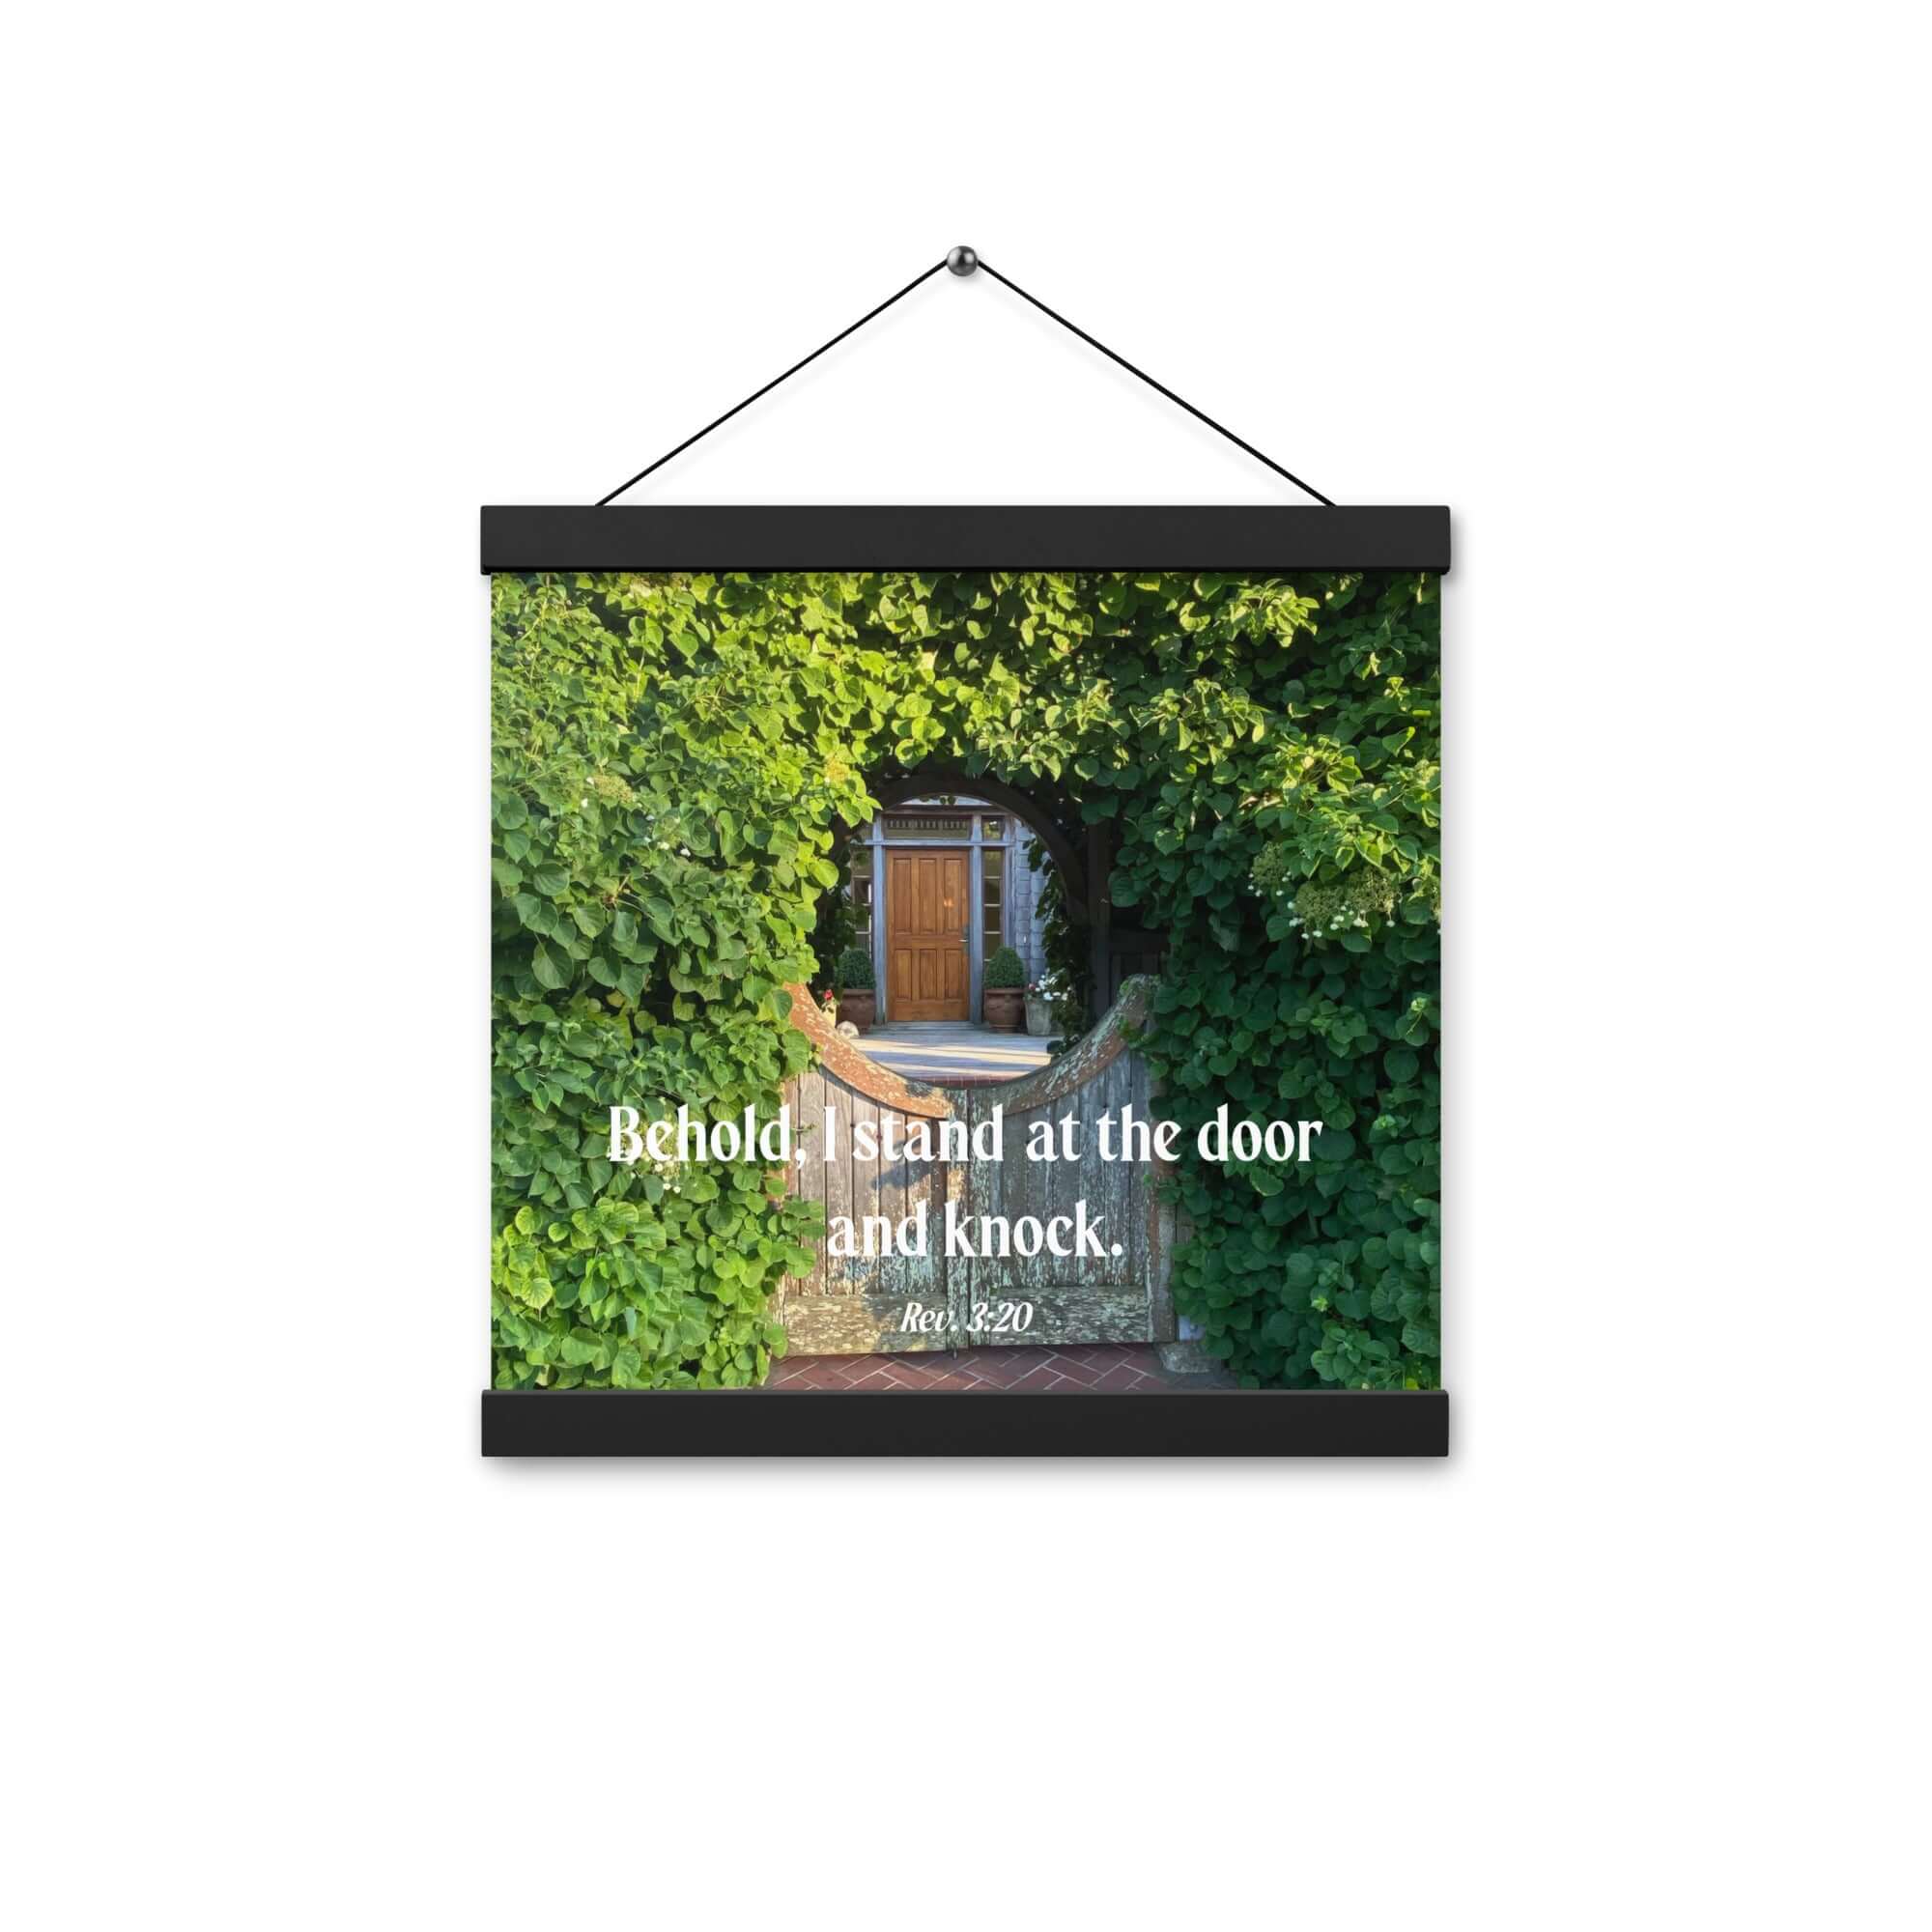 Rev 3:20 Bible Verse, Garden Doorway Hanger Poster